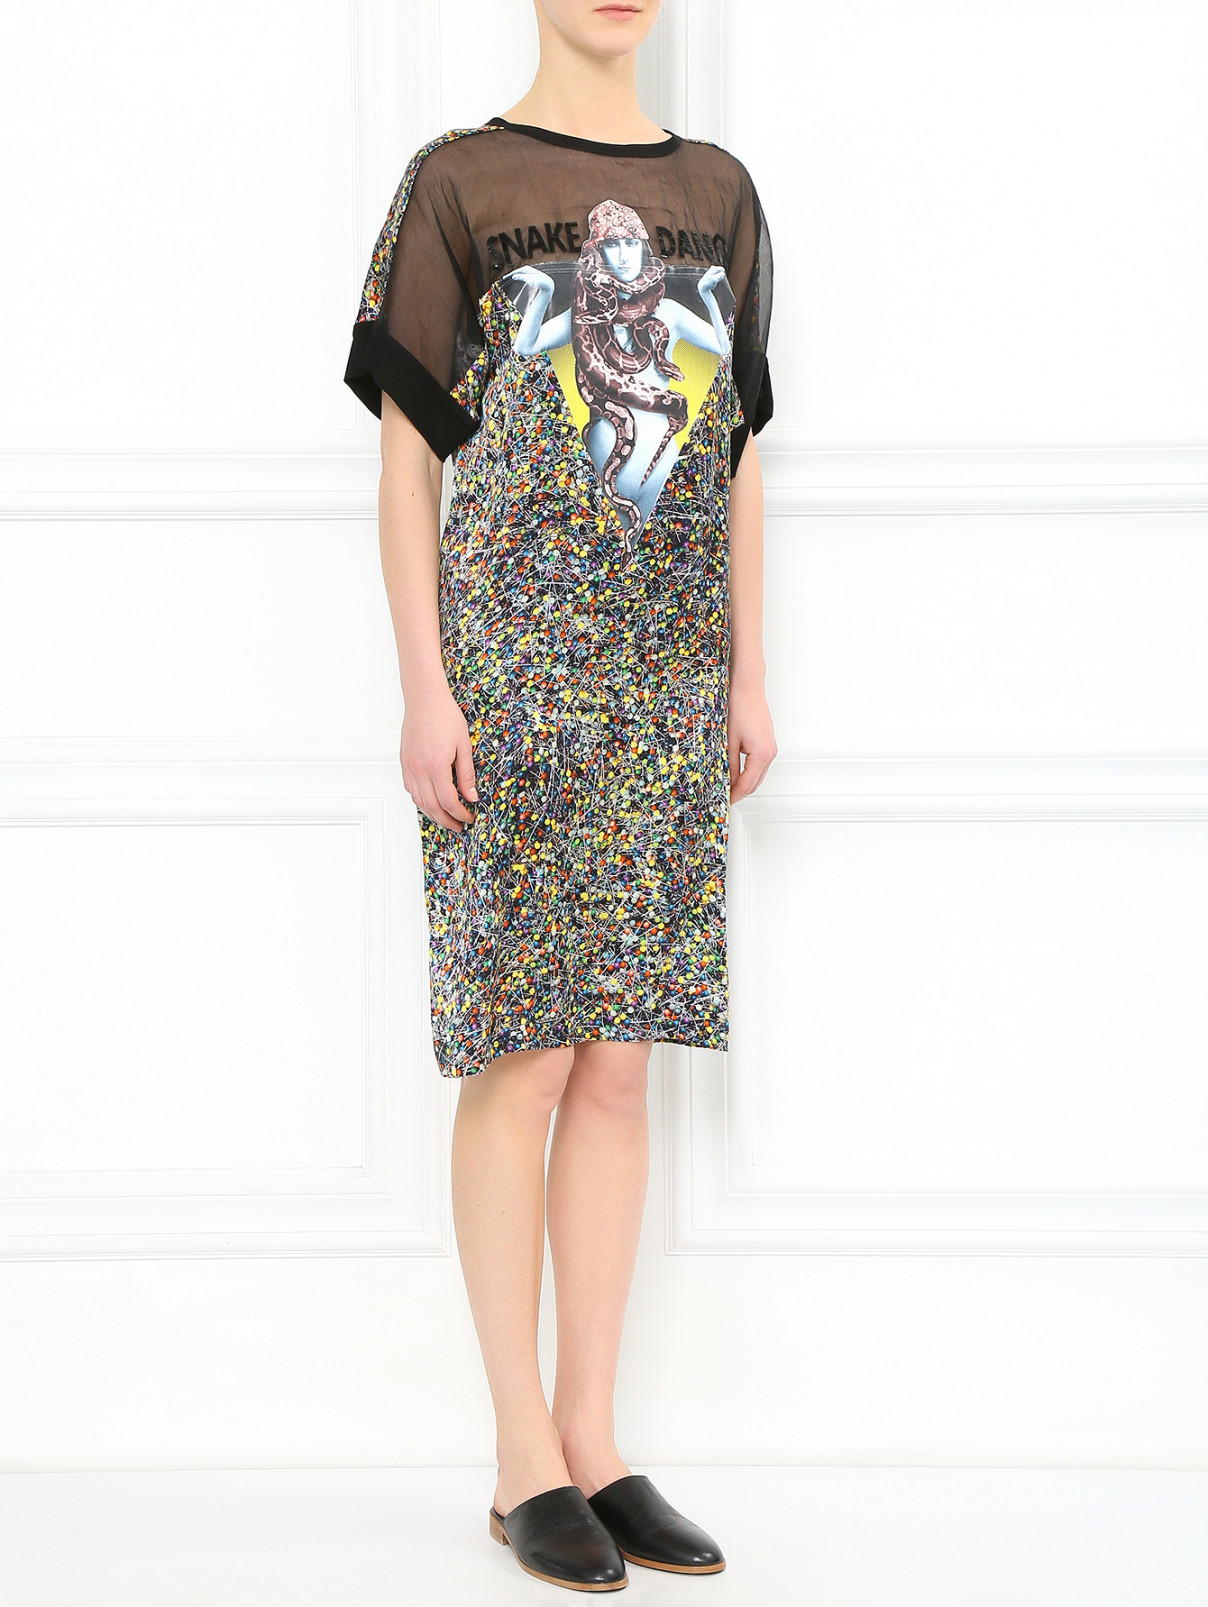 Платье свободного фасона из шелка с узором декорированное пайетками Jean Paul Gaultier  –  Модель Общий вид  – Цвет:  Черный